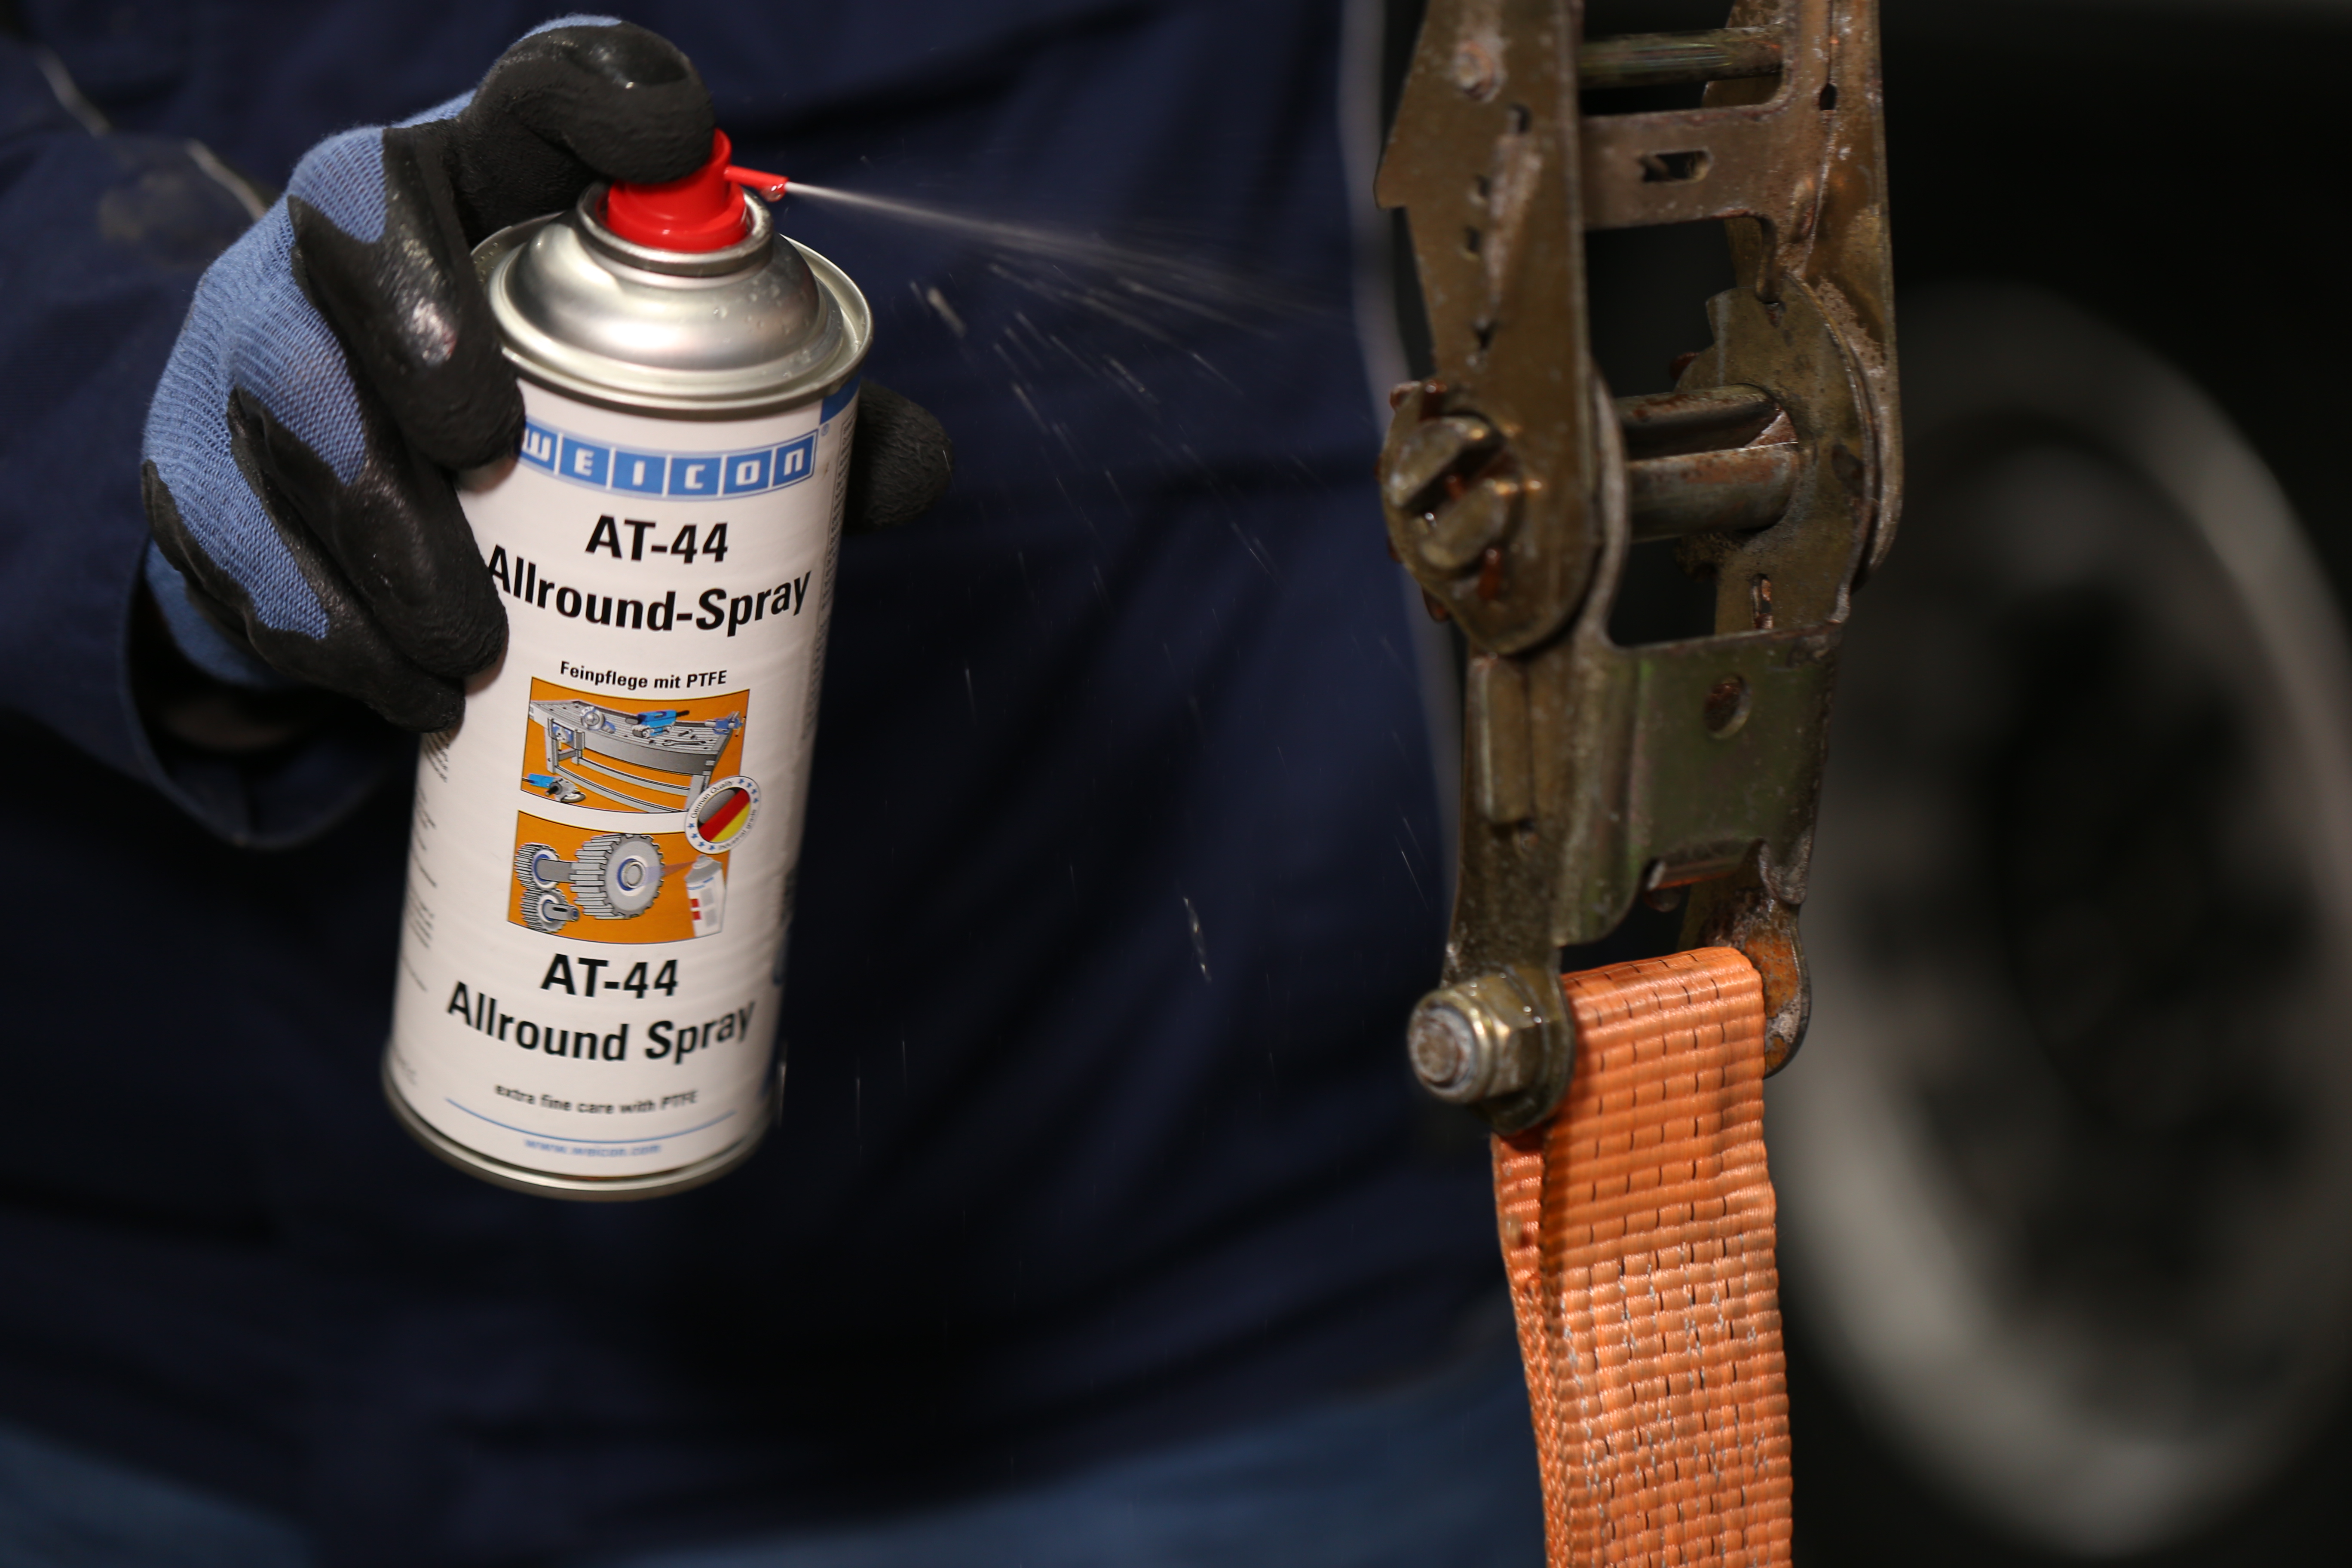 AT-44 Allround-Spray | Schmier- und Multifunktionsöl mit PTFE